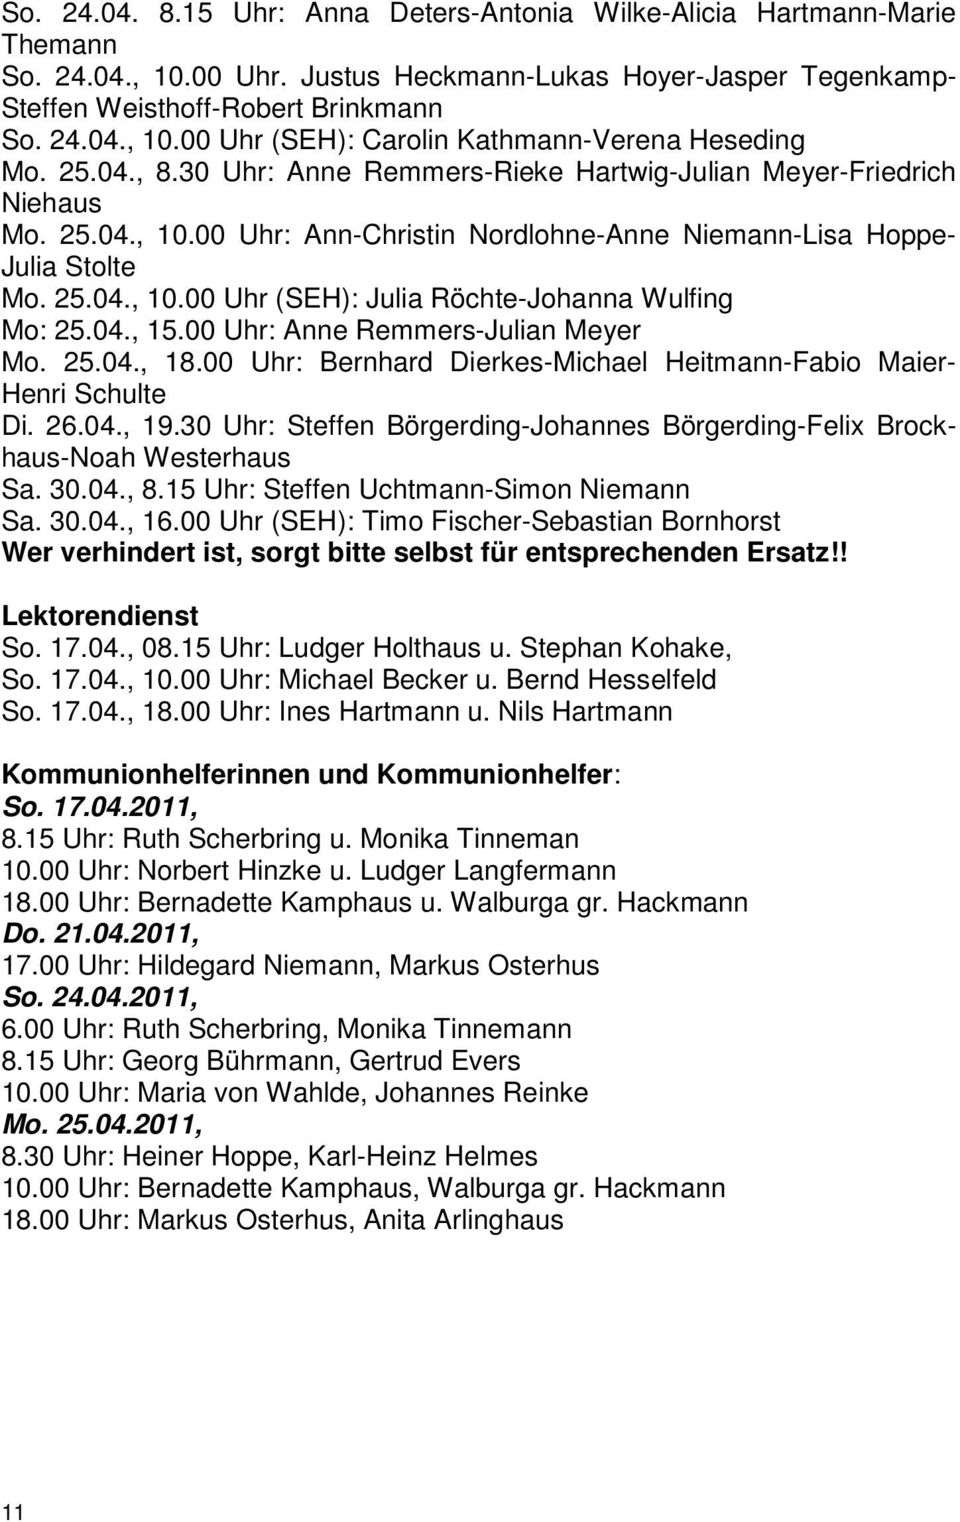 04., 15.00 Uhr: Anne Remmers-Julian Meyer Mo. 25.04., 18.00 Uhr: Bernhard Dierkes-Michael Heitmann-Fabio Maier- Henri Schulte Di. 26.04., 19.